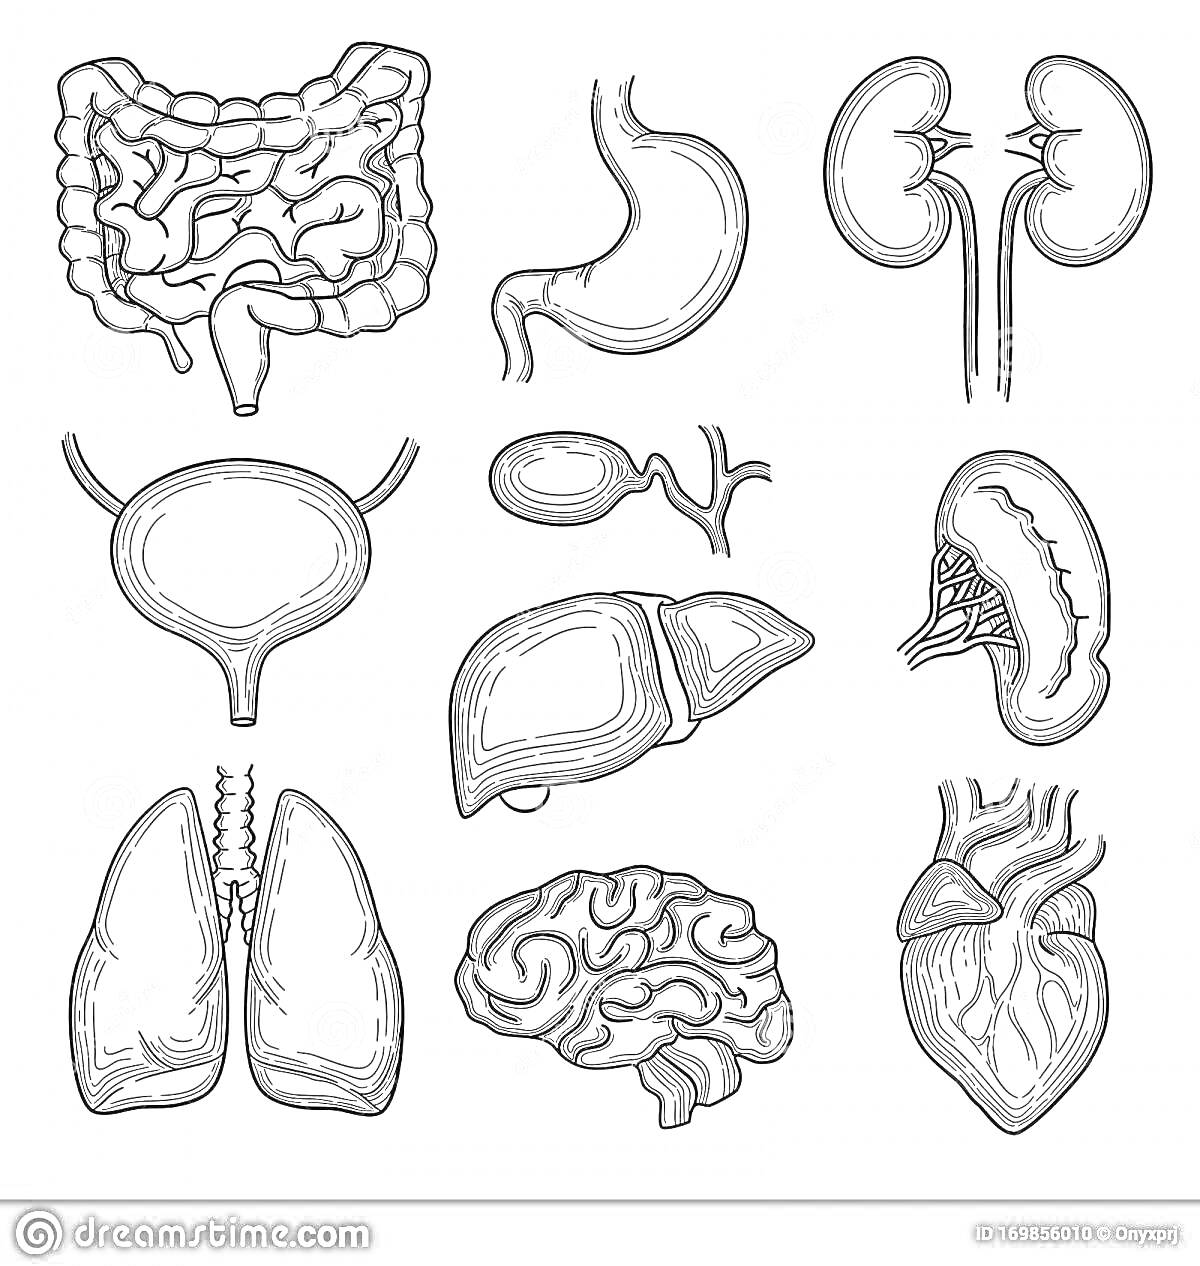 Раскраска Внутренние органы человека: кишечник, желудок, почки, мочевой пузырь, желчный пузырь, печень, селезенка, легкие, мозг, сердце